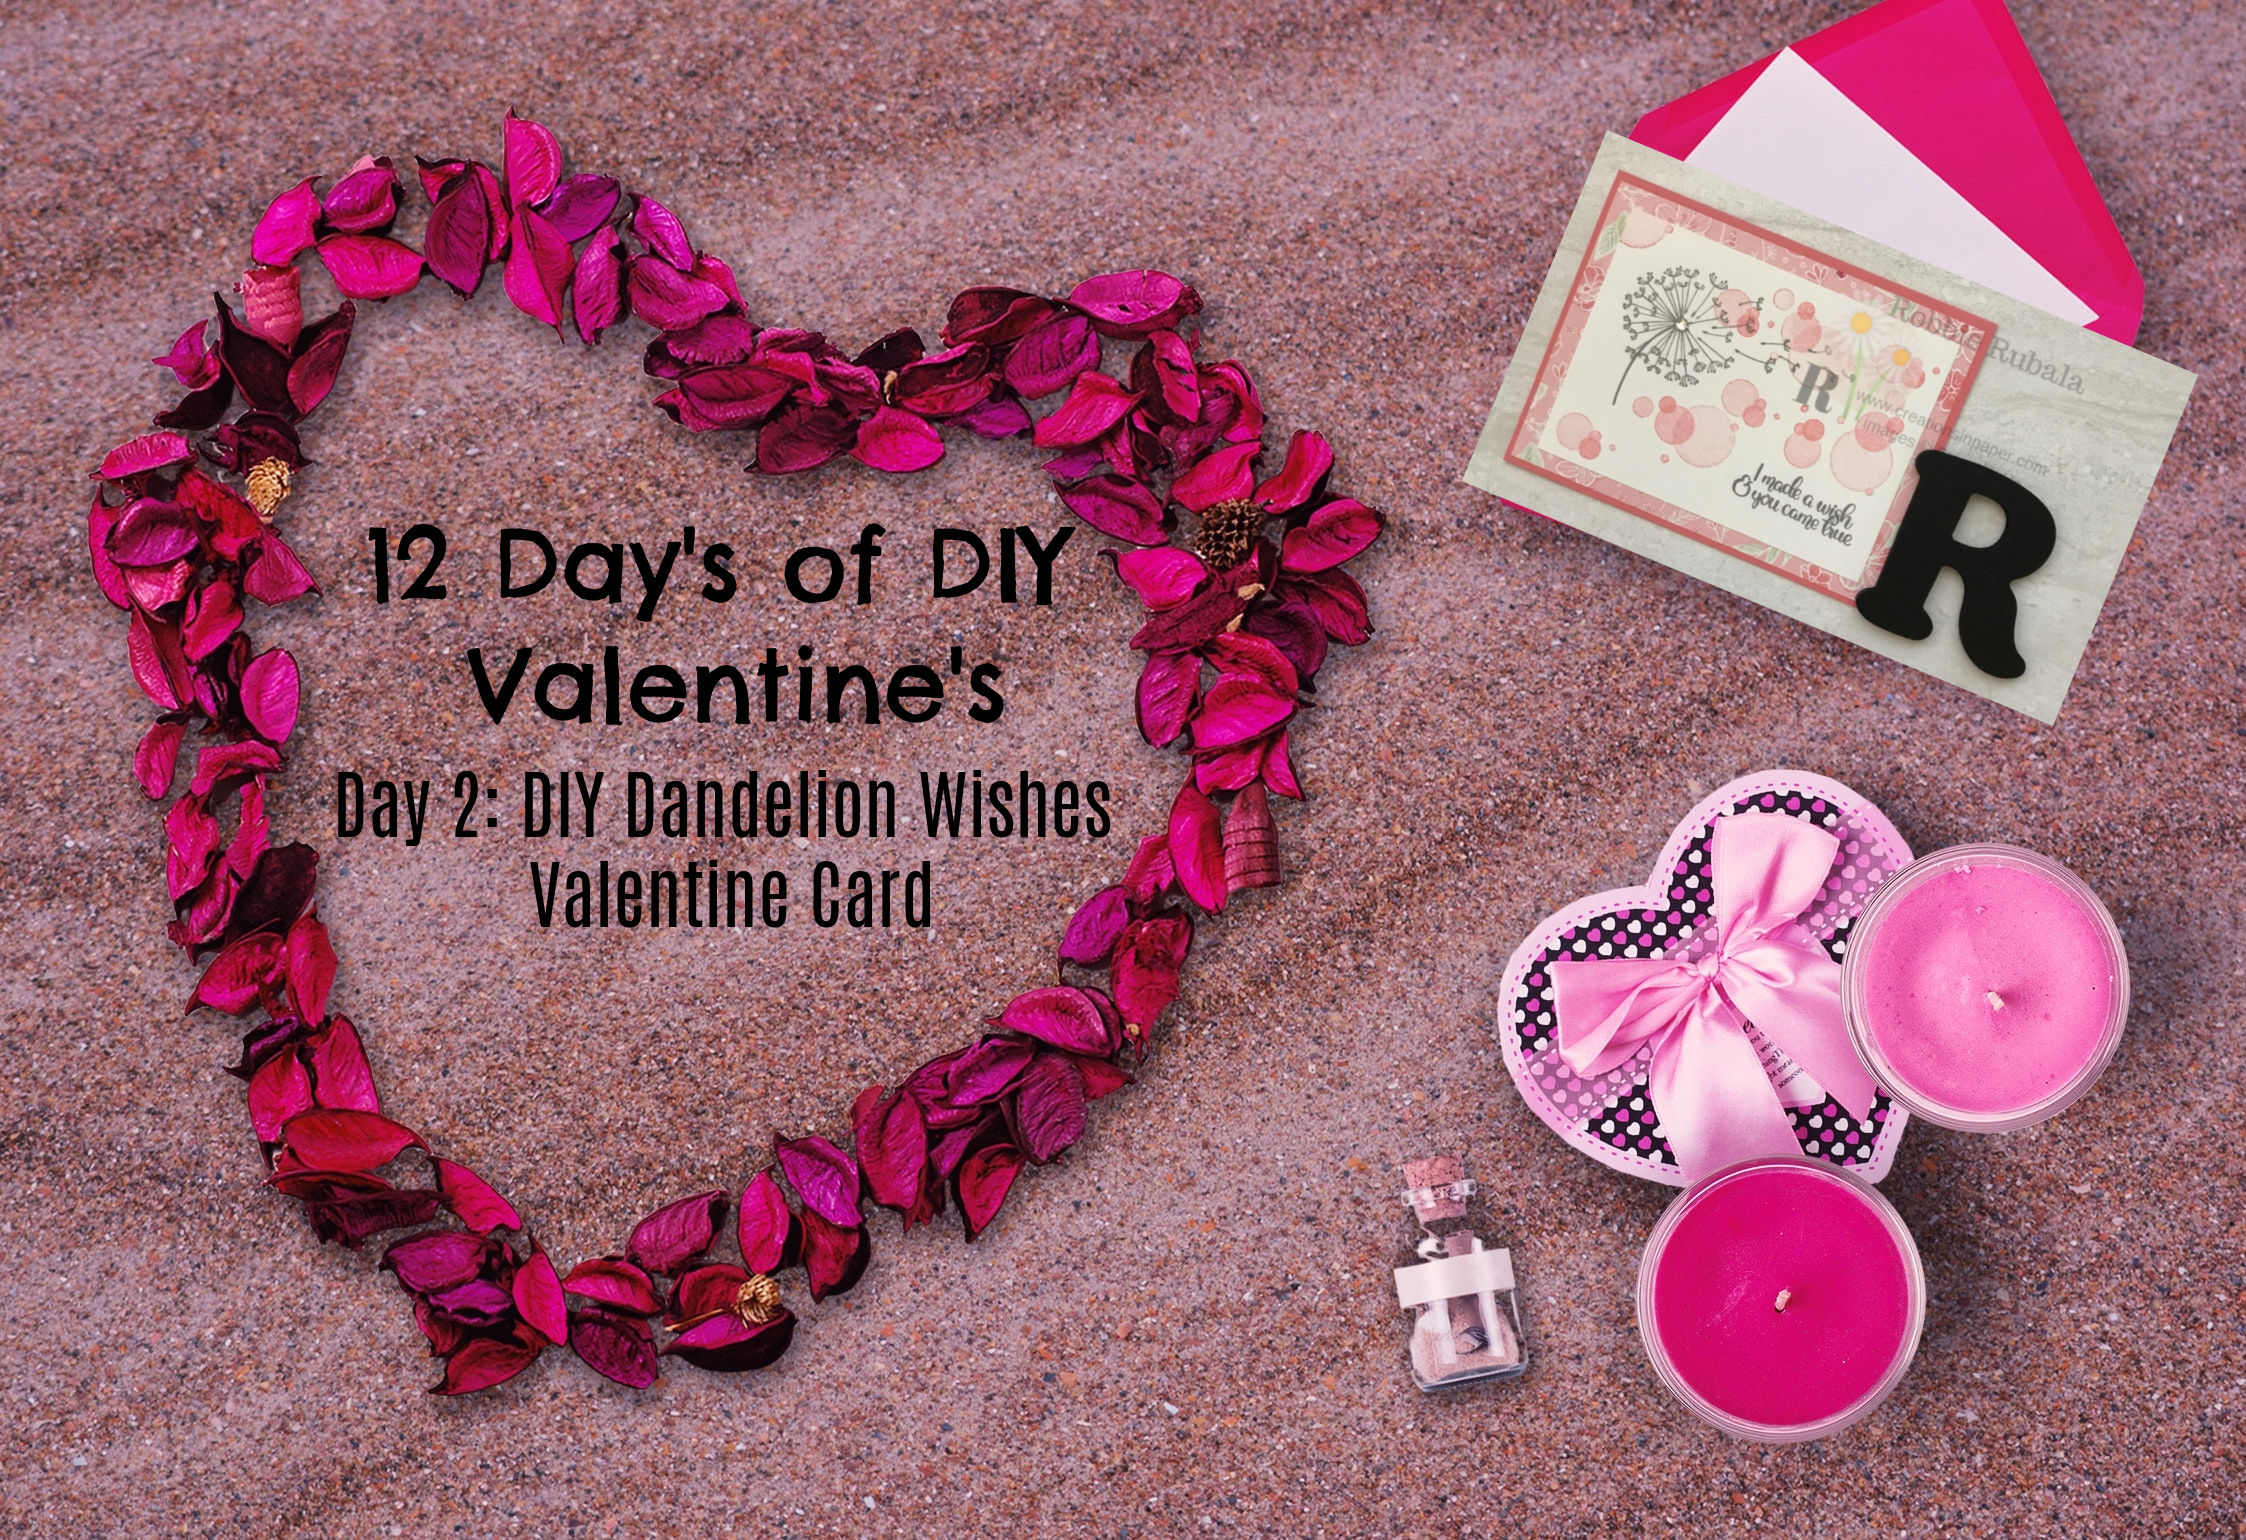 DIY Dandelion Wishes Valentine Card